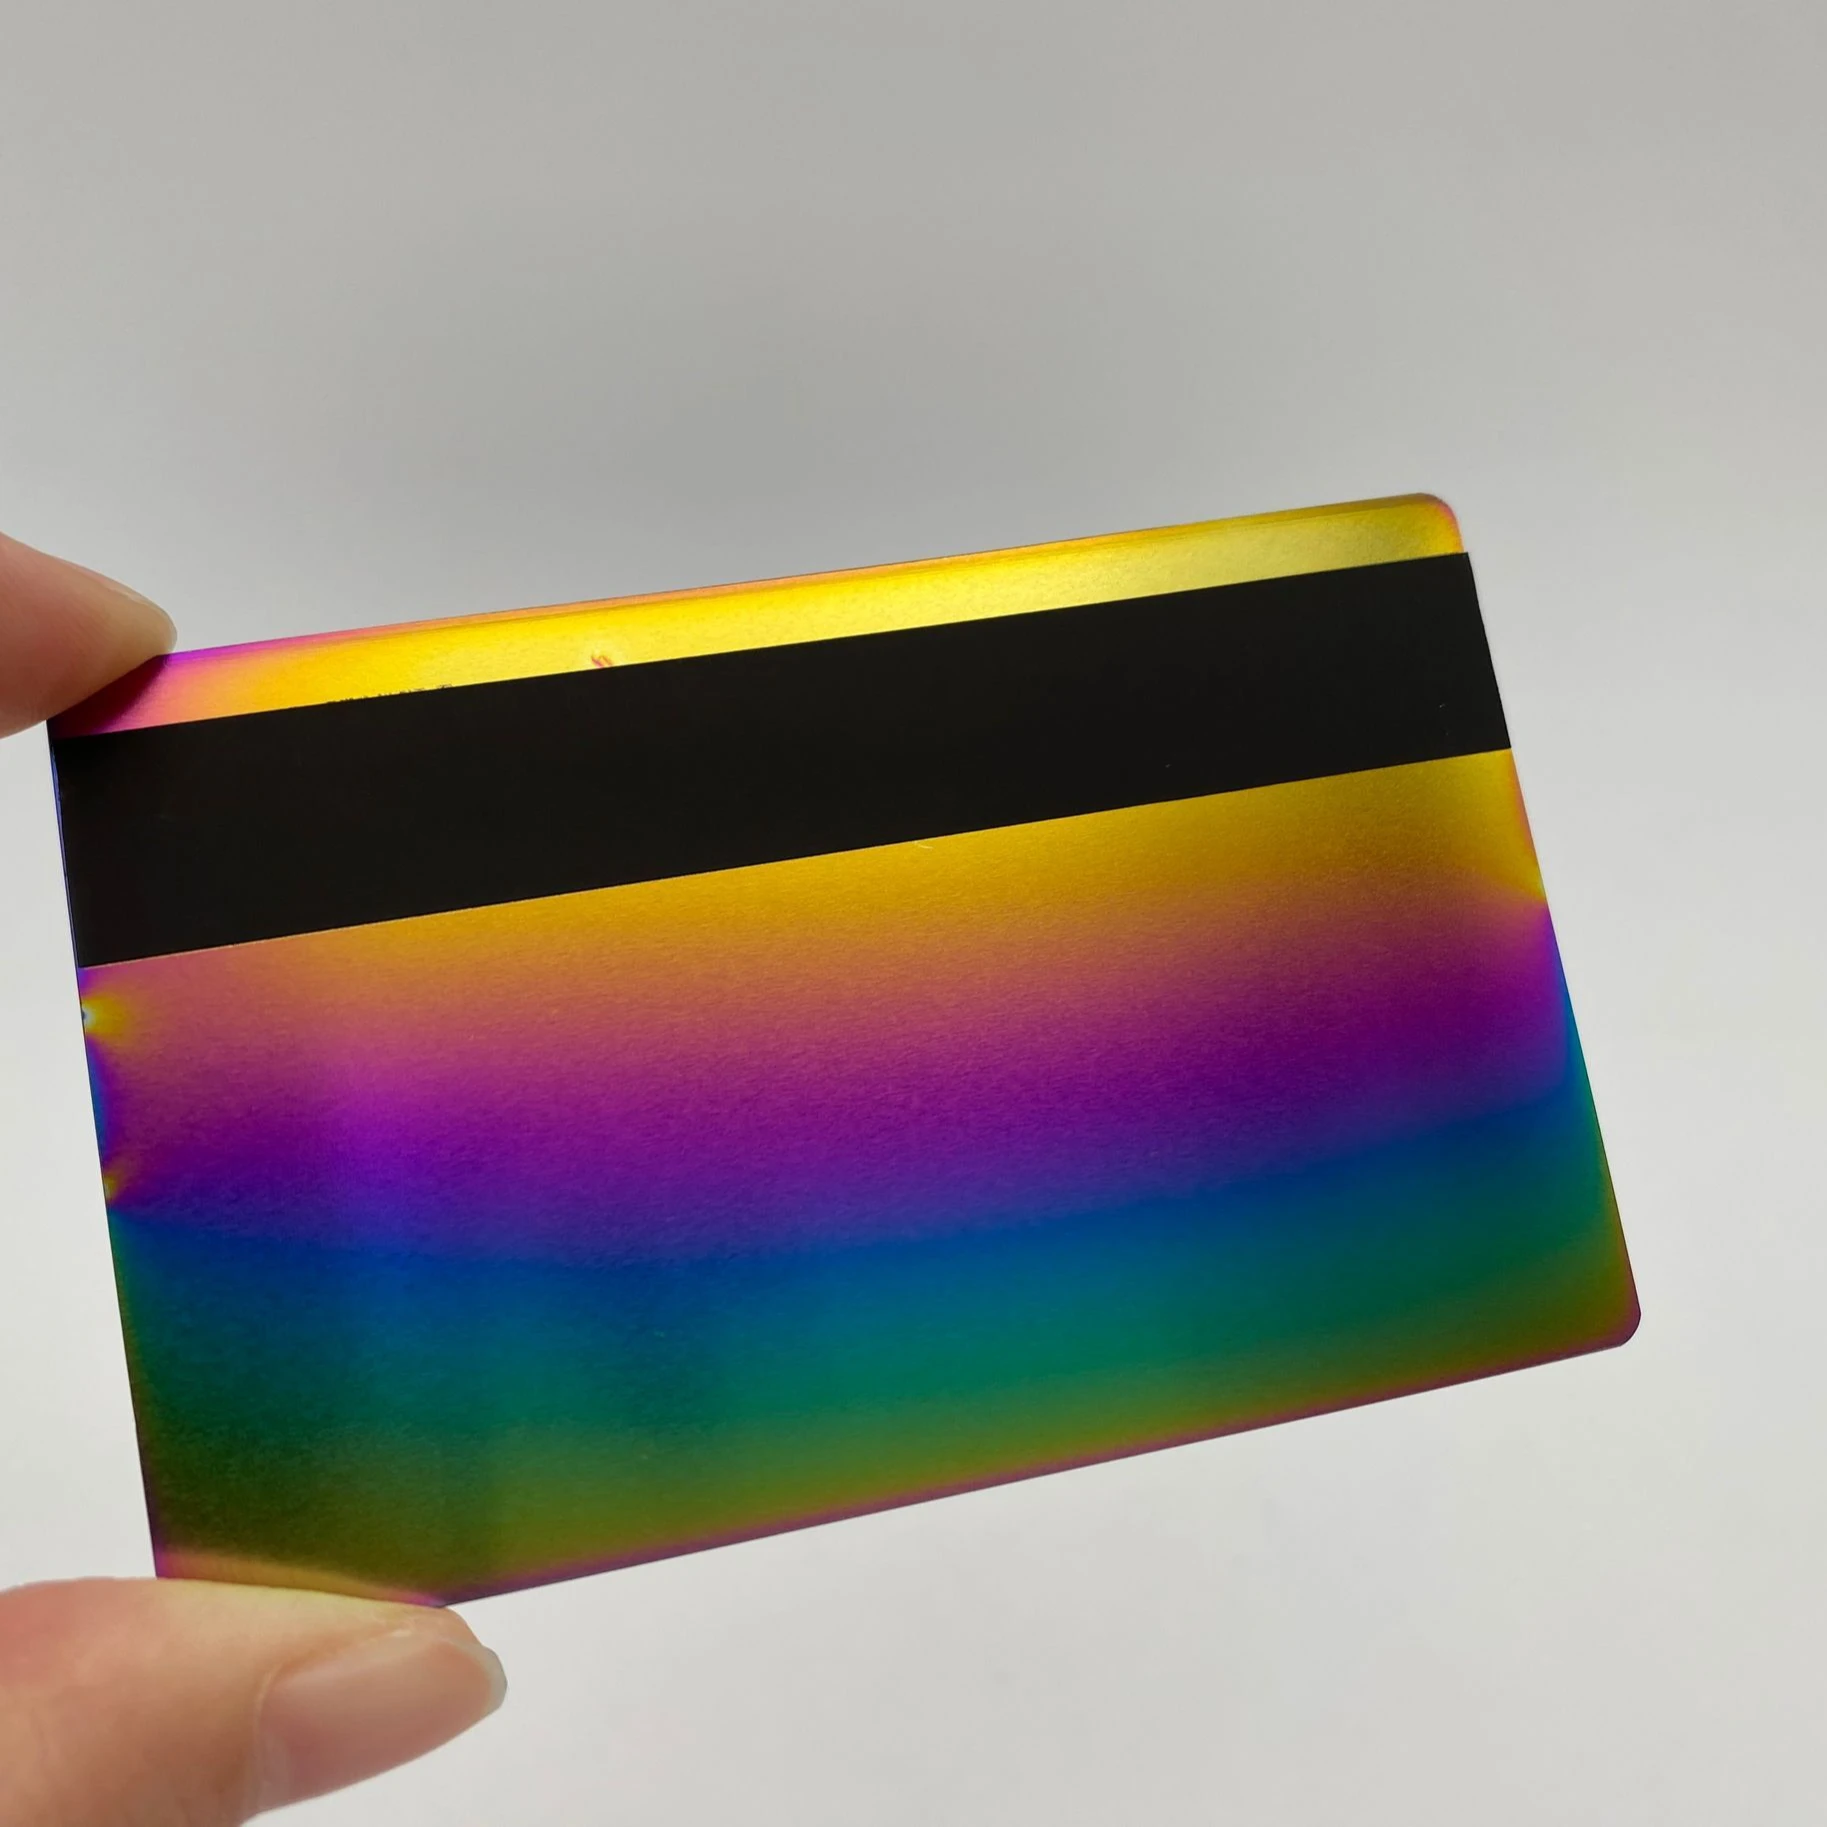 

DU colorful rainbow metal cards, Cmyk or pantone